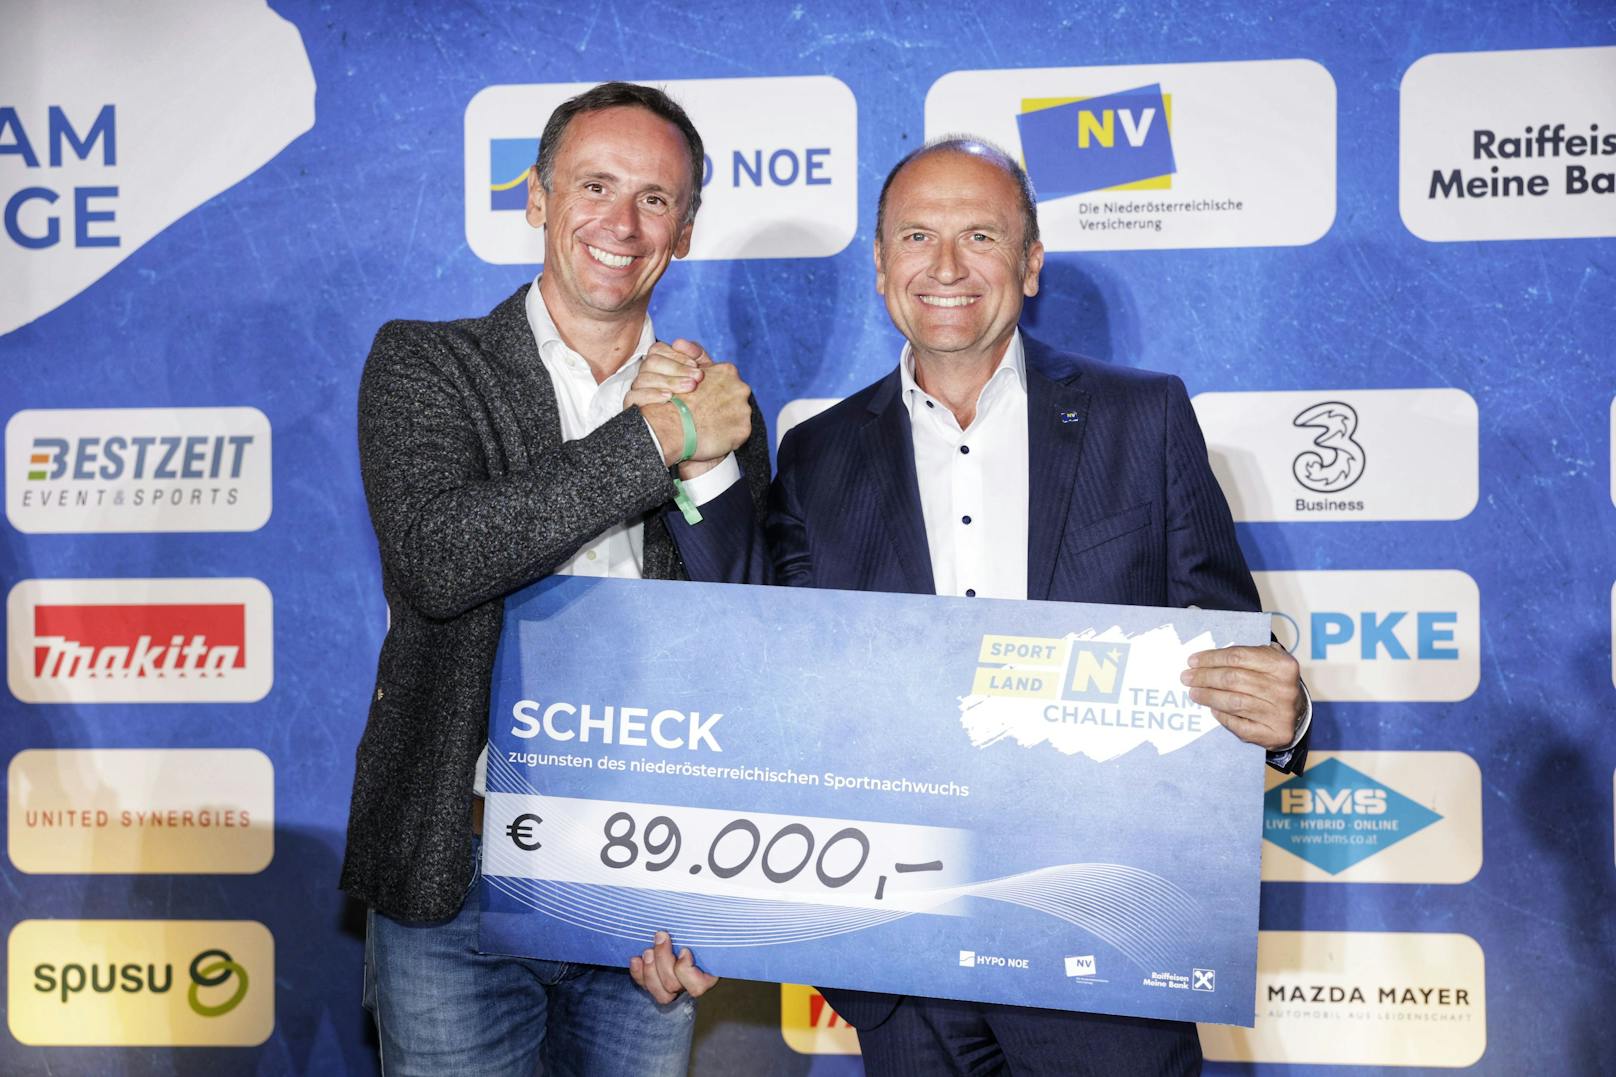 Sportlandesrat Jochen Danninger und NV-Vorstandsdirektor Bernhard Lackner (r.) freuen sich über 89.000 Euro für den NÖ-Sportnachwuchs